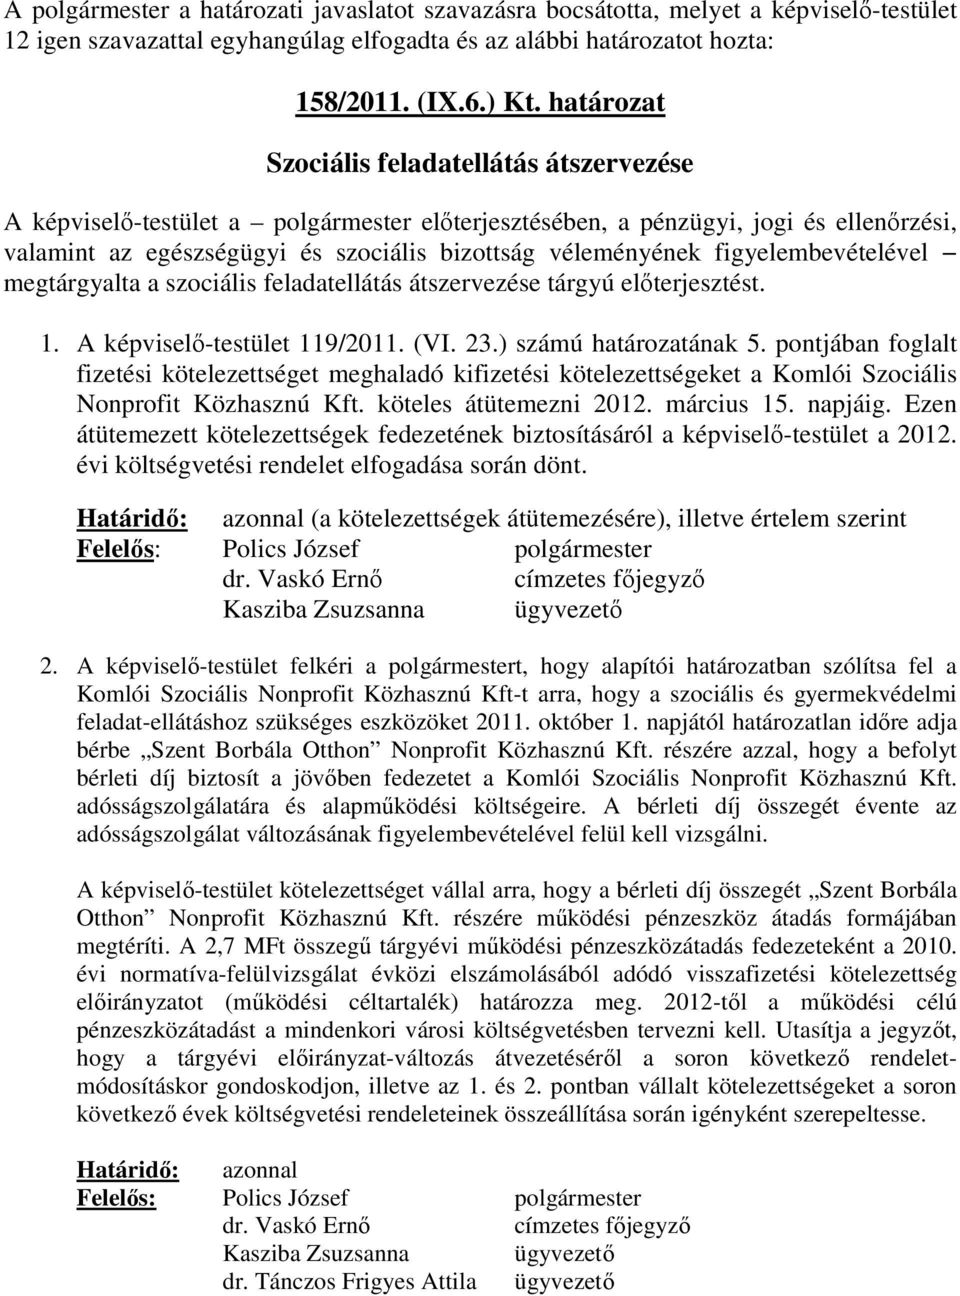 figyelembevételével megtárgyalta a szociális feladatellátás átszervezése tárgyú elıterjesztést. 1. A képviselı-testület 119/2011. (VI. 23.) számú határozatának 5.